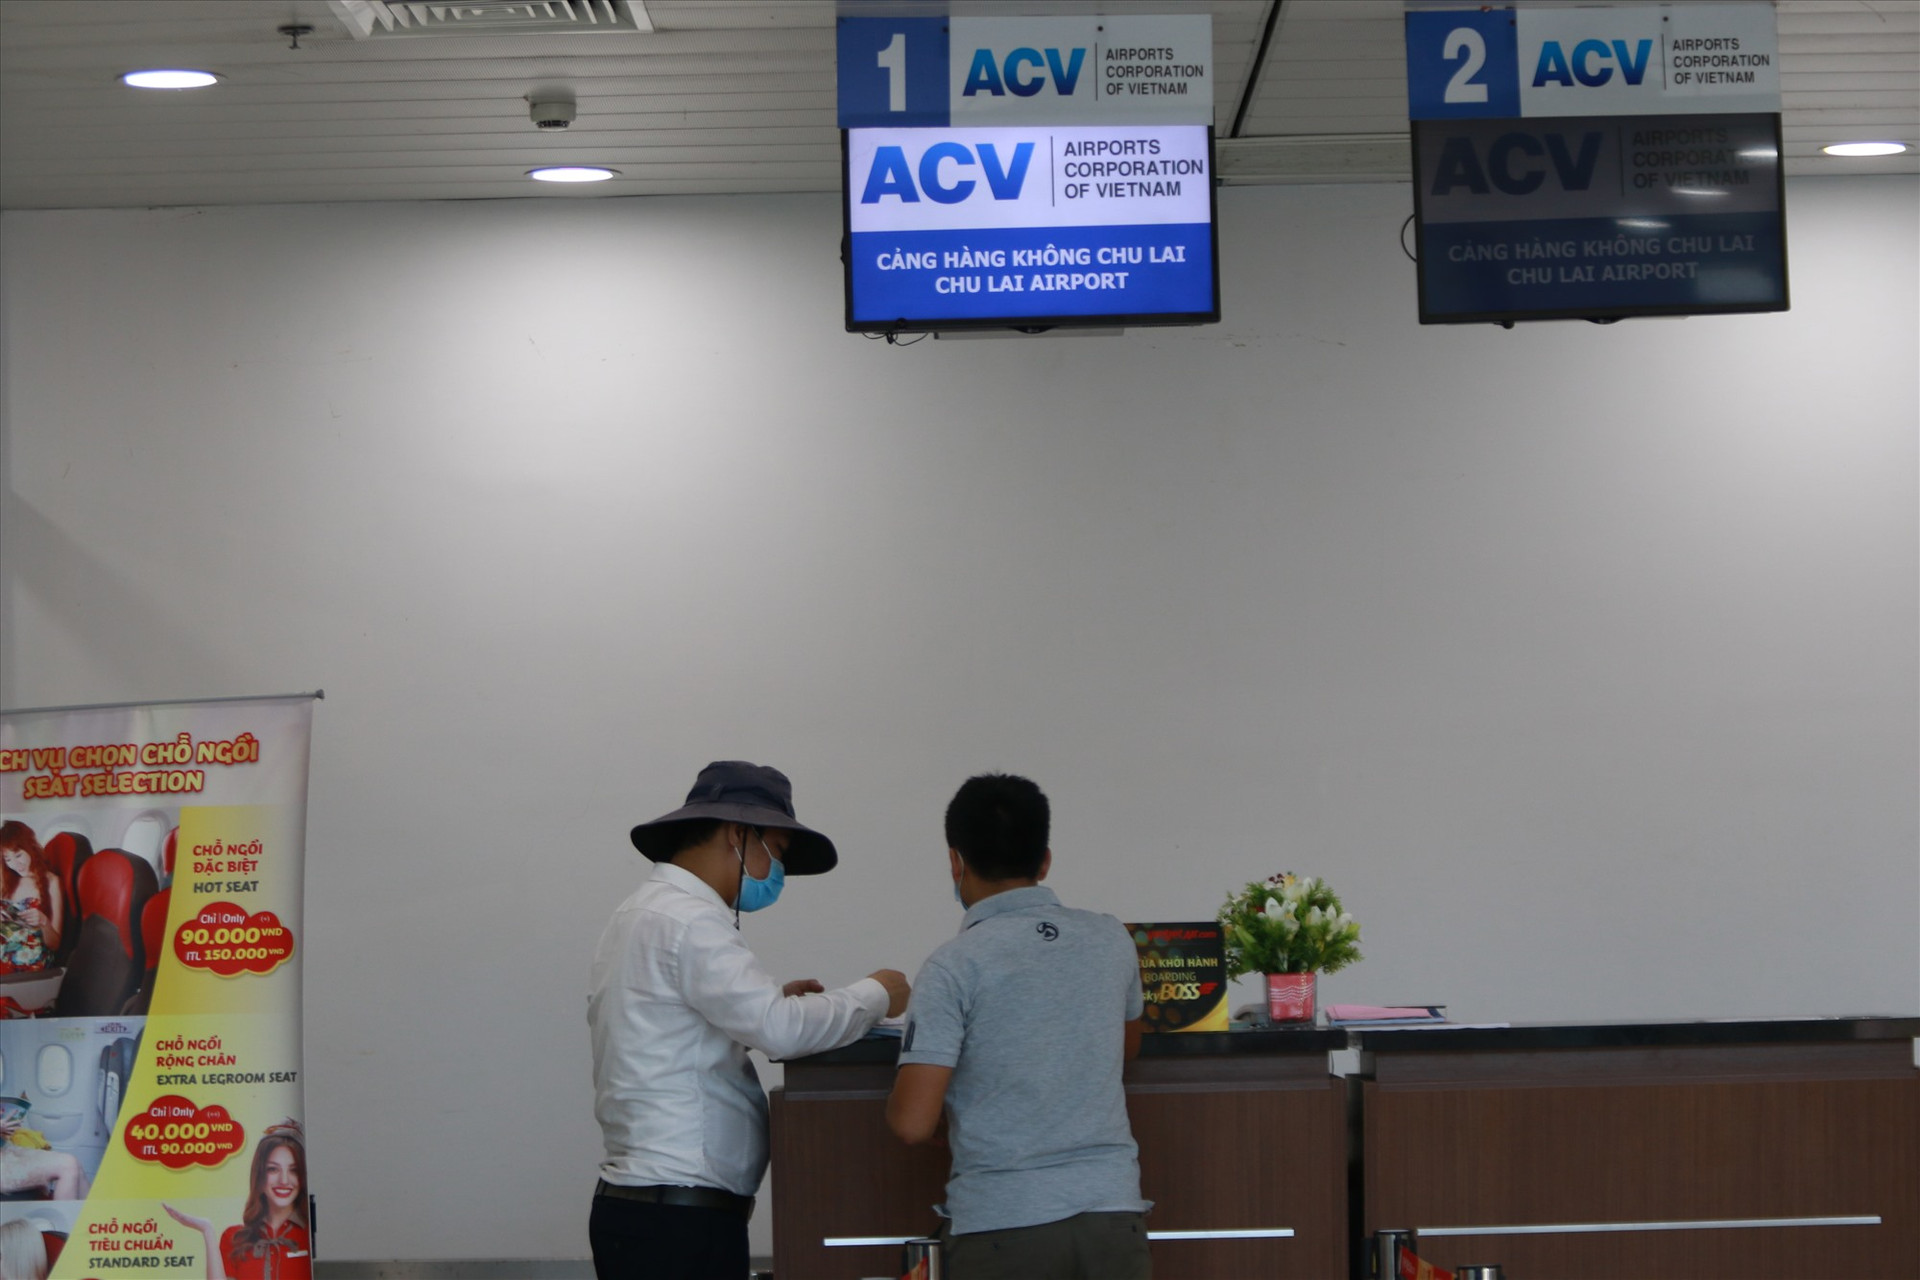 Không như những đồn đoán về việc người dân sẽ đổ dồn về sân bay Chu Lai khi Đà Nẵng phong tỏa nhiều quận, diễn biến ở sân bay Chu Lai sáng nay hoàn toàn bình thường. Ảnh: T.C